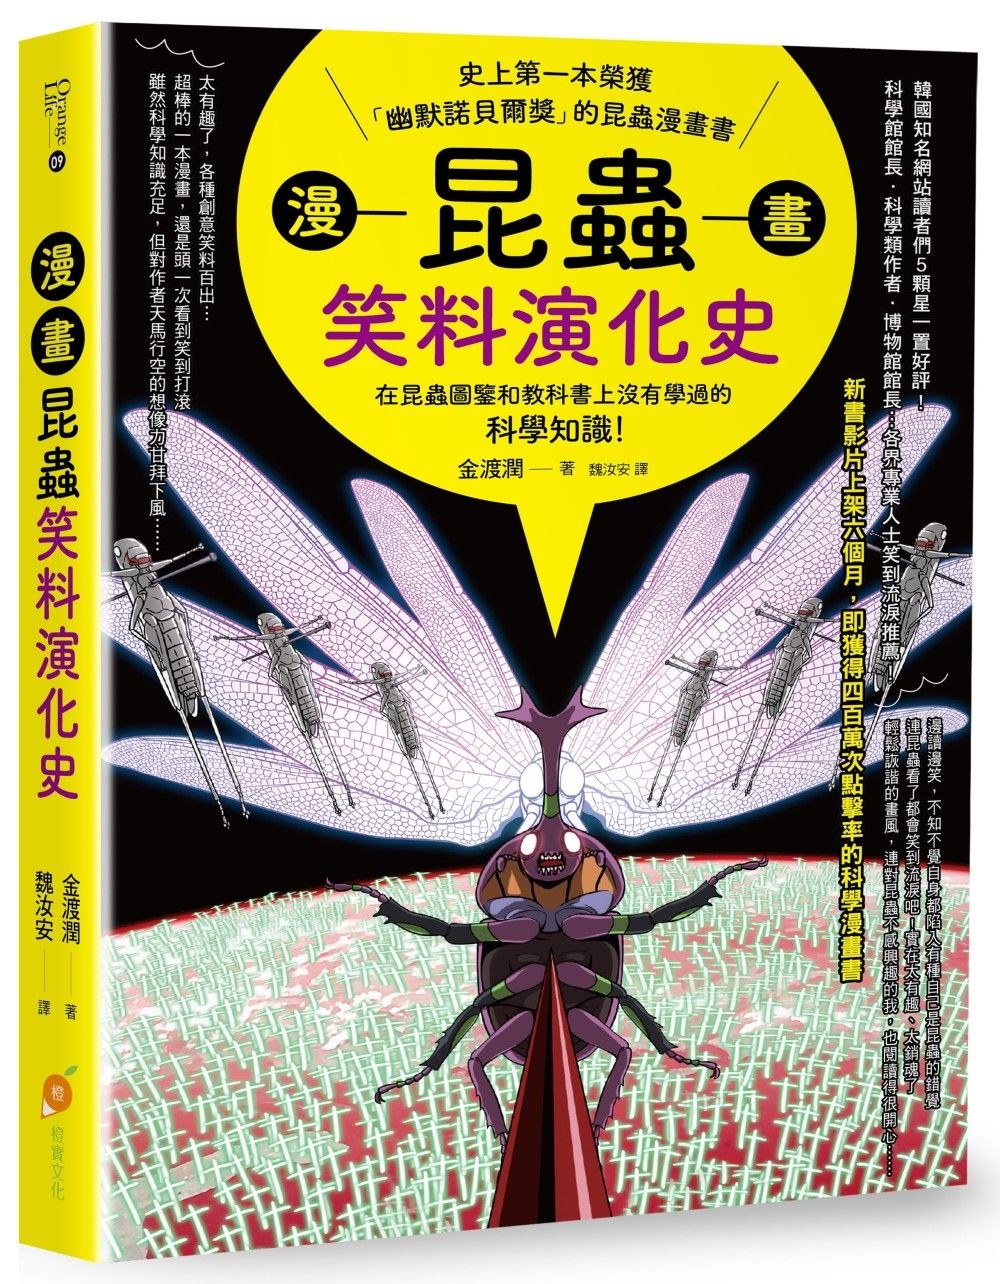 漫畫昆蟲笑料演化史：史上第一本榮獲「幽默諾貝爾獎」的昆蟲漫畫...